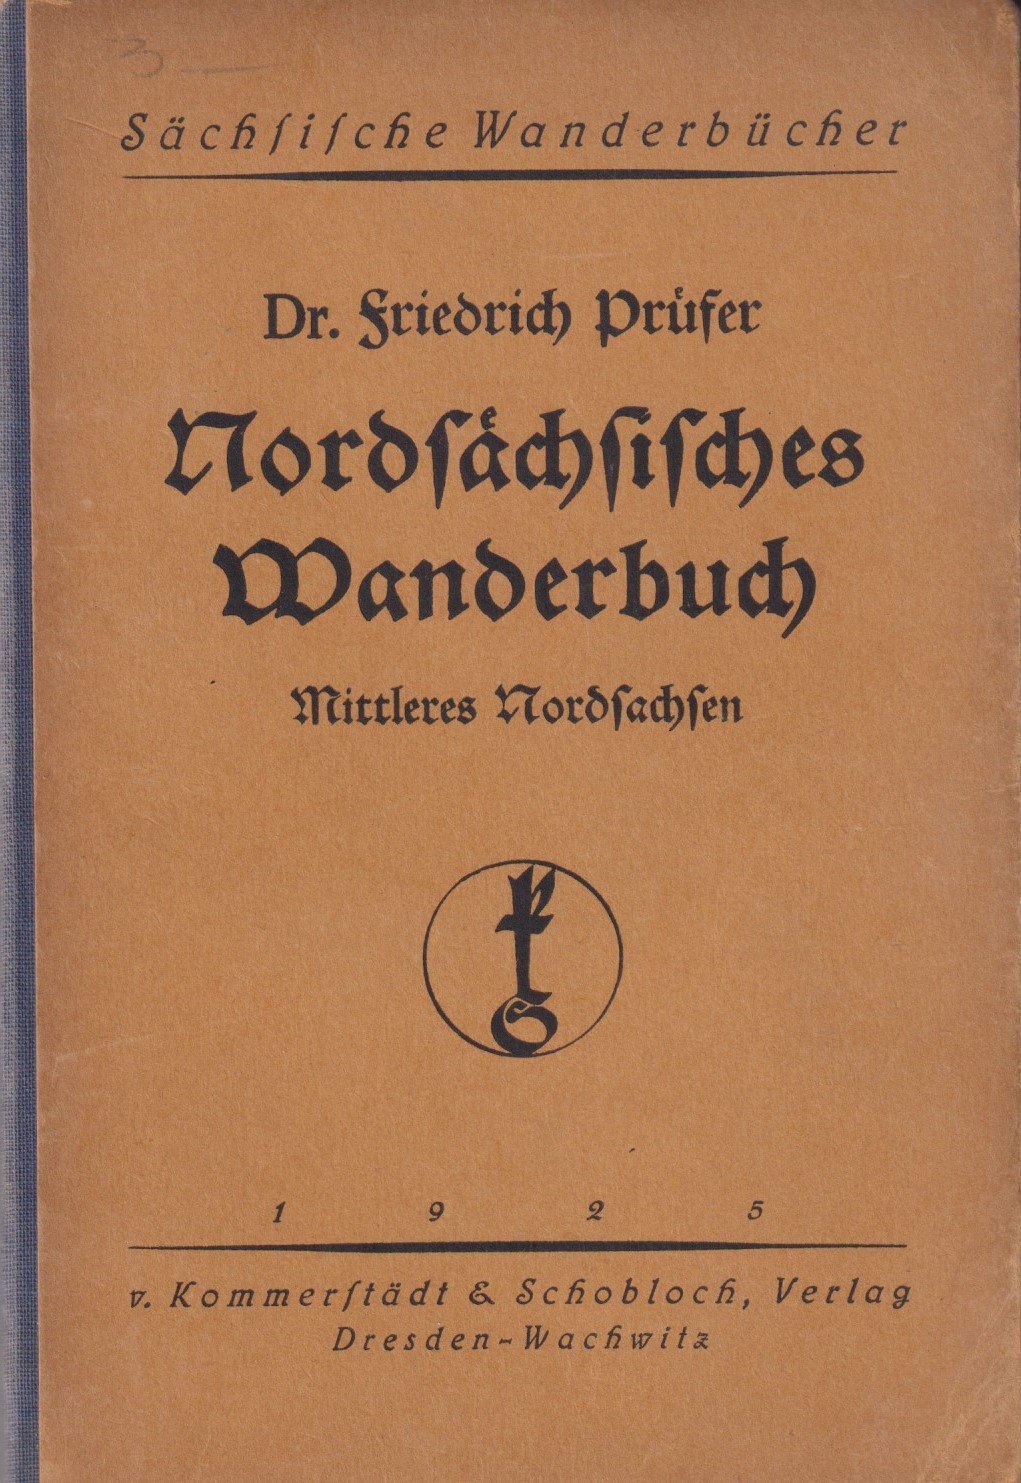 Sächsische Wanderbücher: Nordsächsisches Wanderbuch (Mittleres Nordsachsen) (Archiv SAXONIA-FREIBERG-STIFTUNG CC BY-NC-SA)